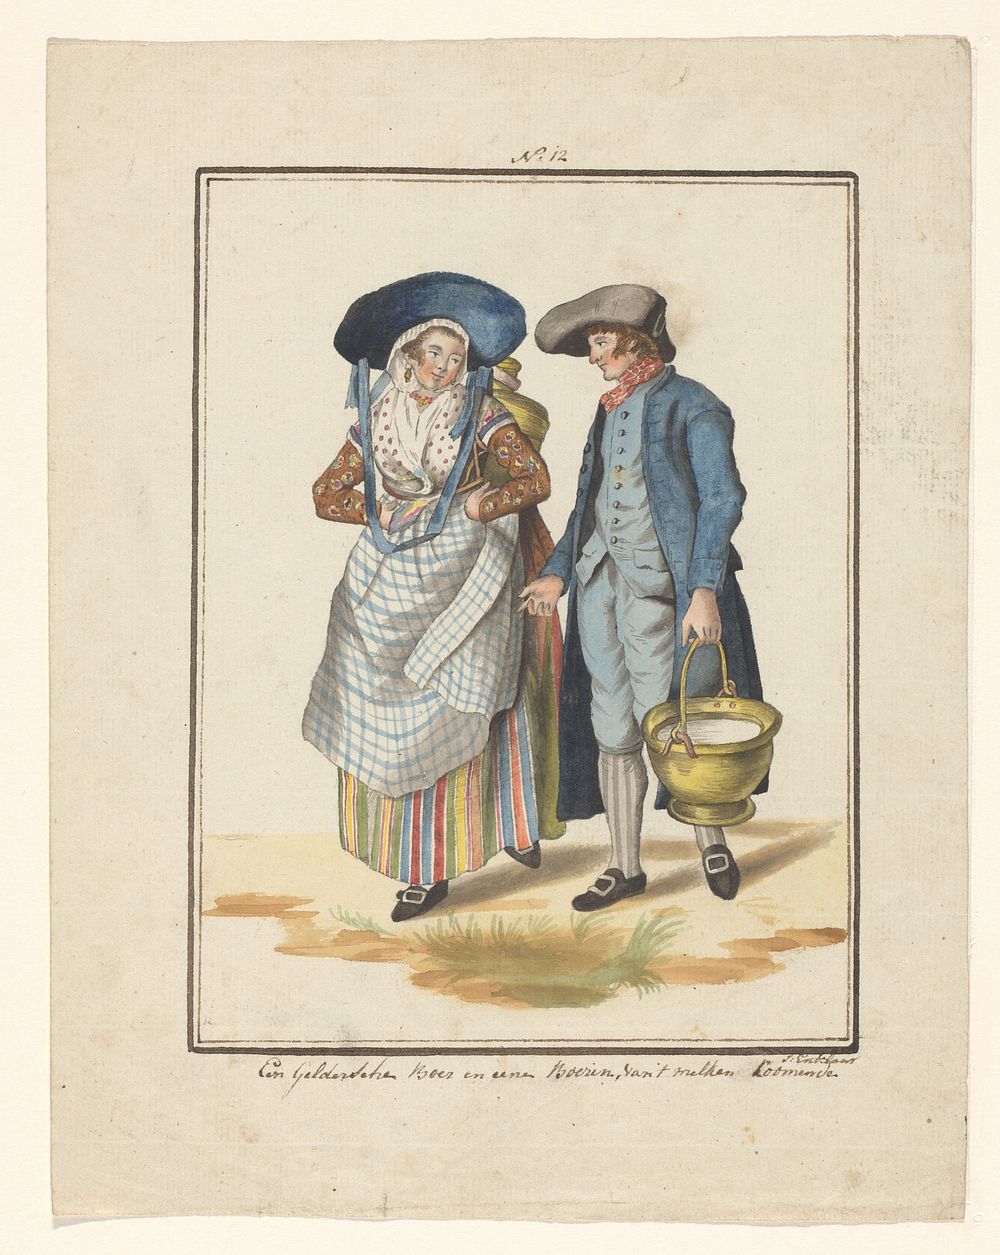 Gelderse boer en boerin (in or after 1803 - c. 1899) by J Enklaar, Ludwig Gottlieb Portman and Dirk van Oosterhoudt